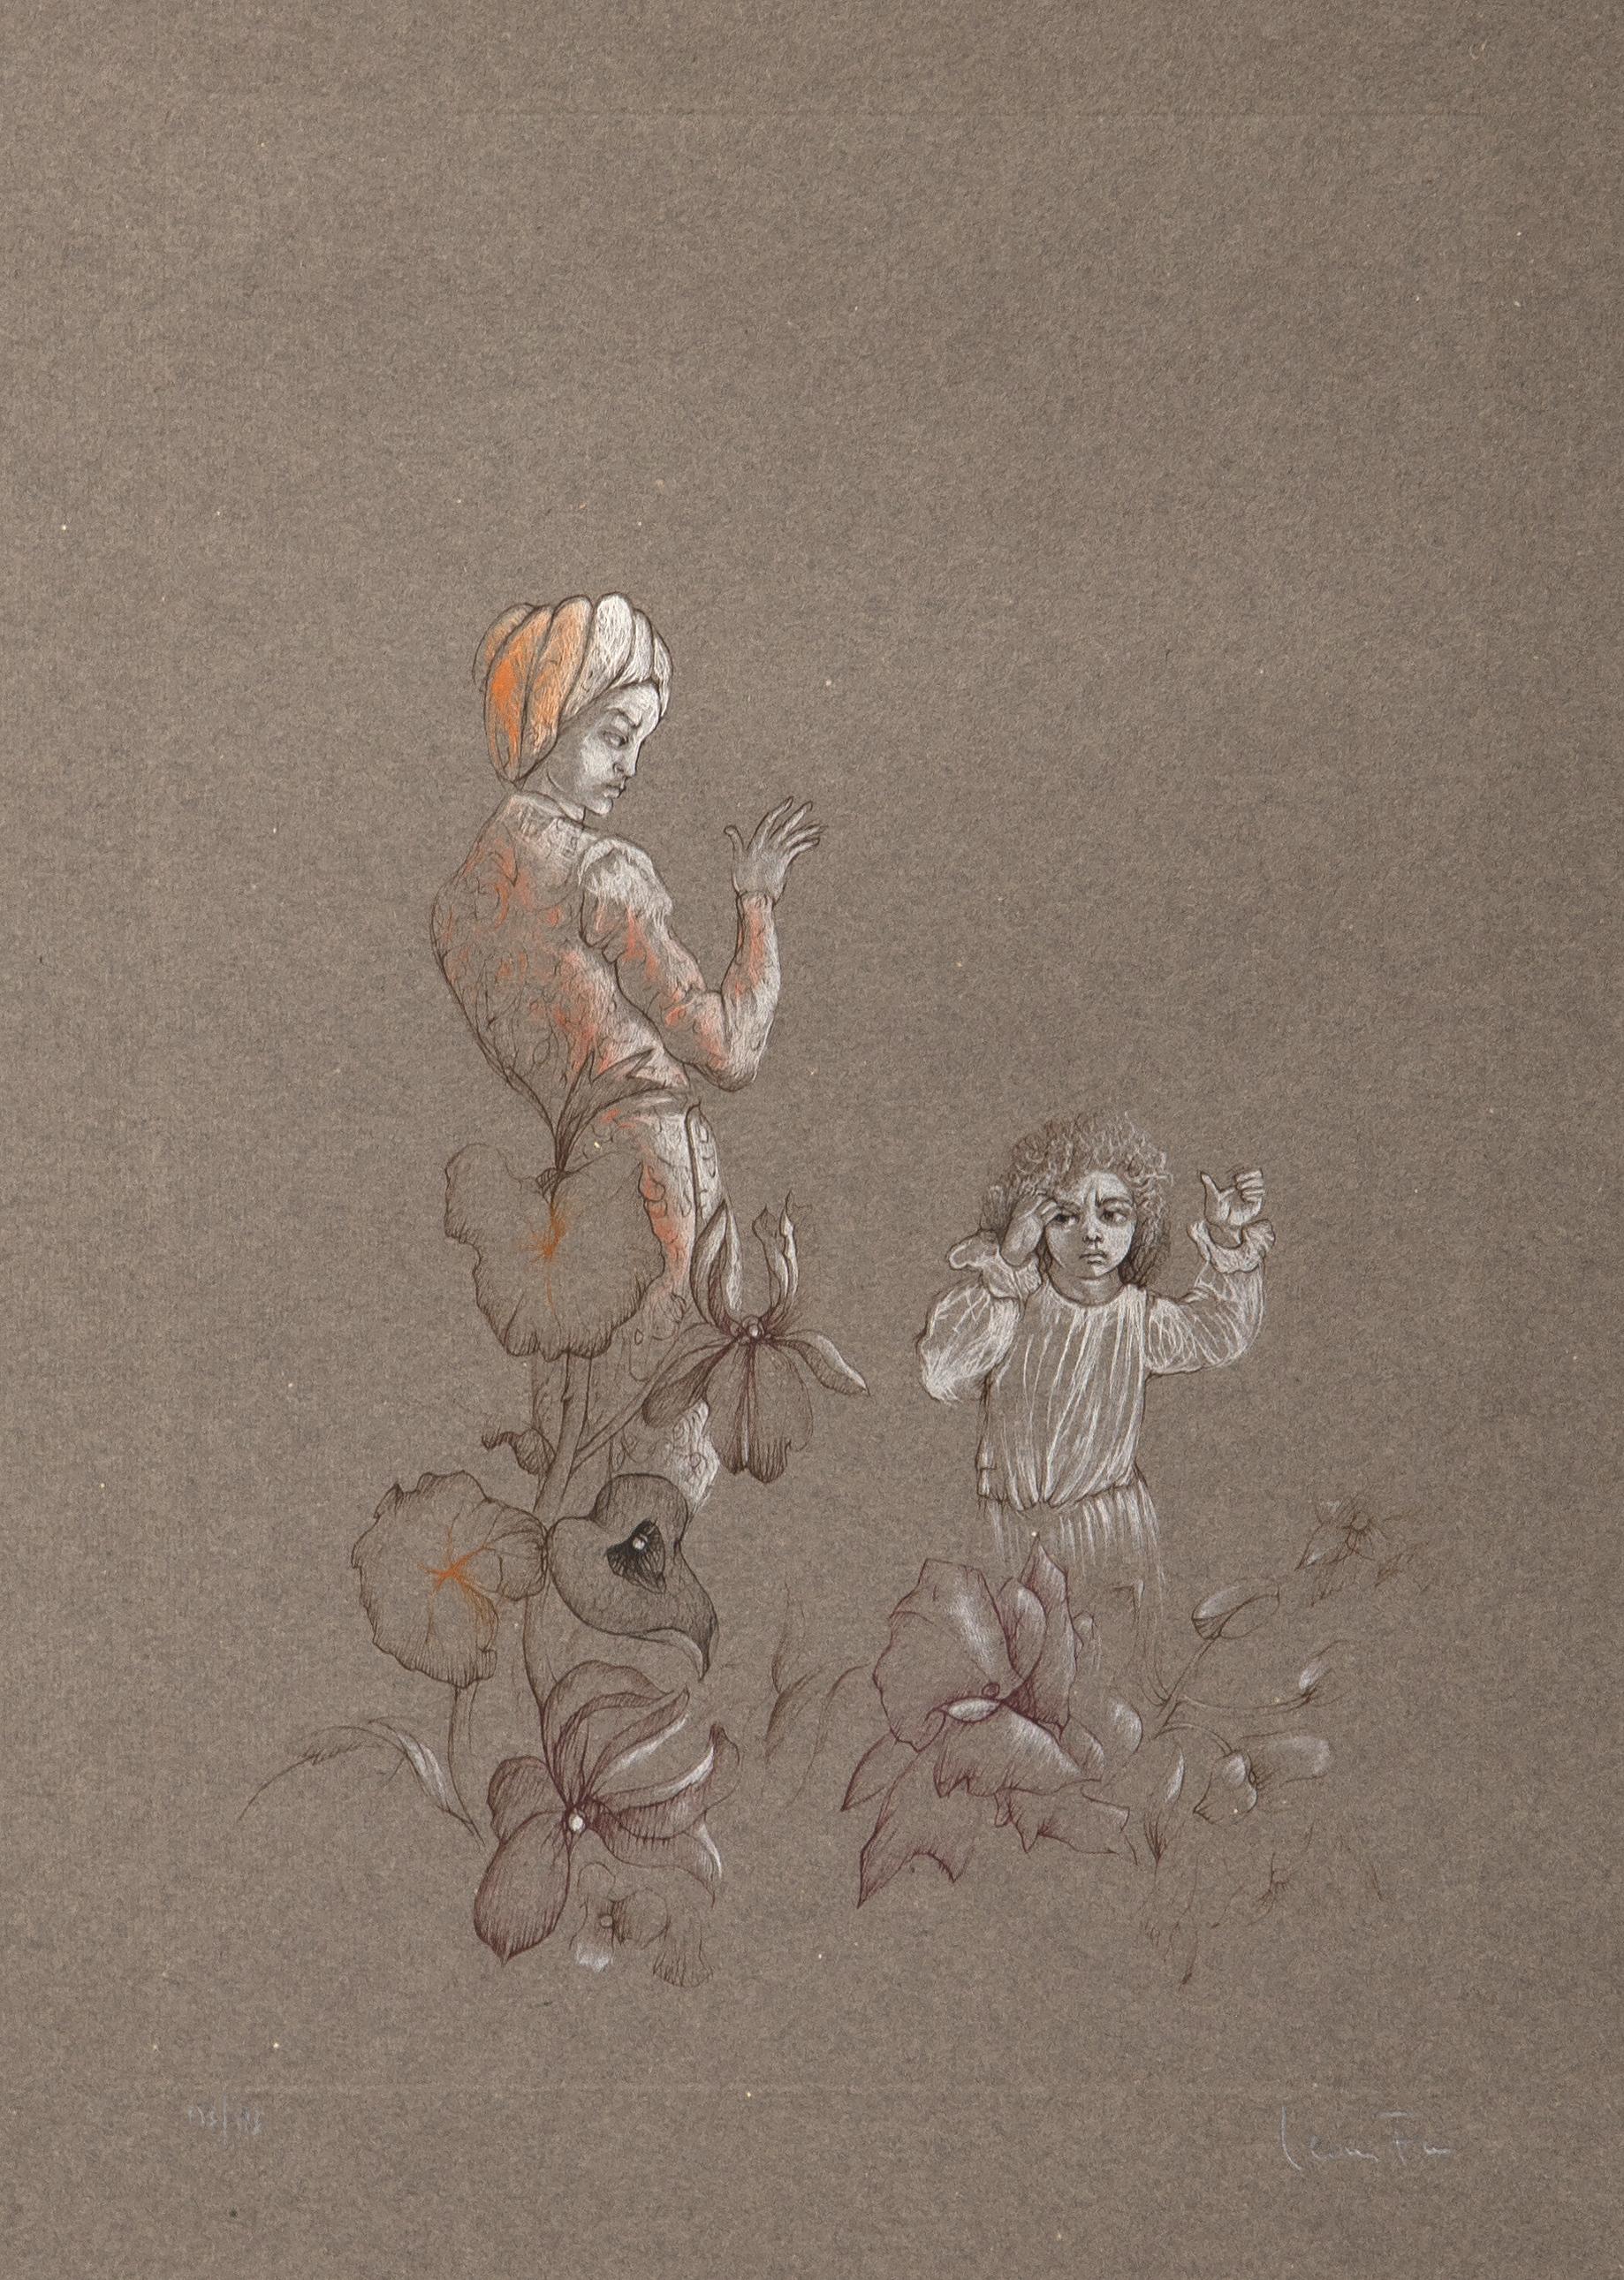 Mère et enfant
Leonor Fini, Argentine/France (1918-1996)
Gravure en couleurs sur Japon, signée et numérotée au crayon
Édition de 153/186
Taille de l'image : 18 x 12 pouces
Taille : 26.5 x 19 in. (67.31 x 48.26 cm)